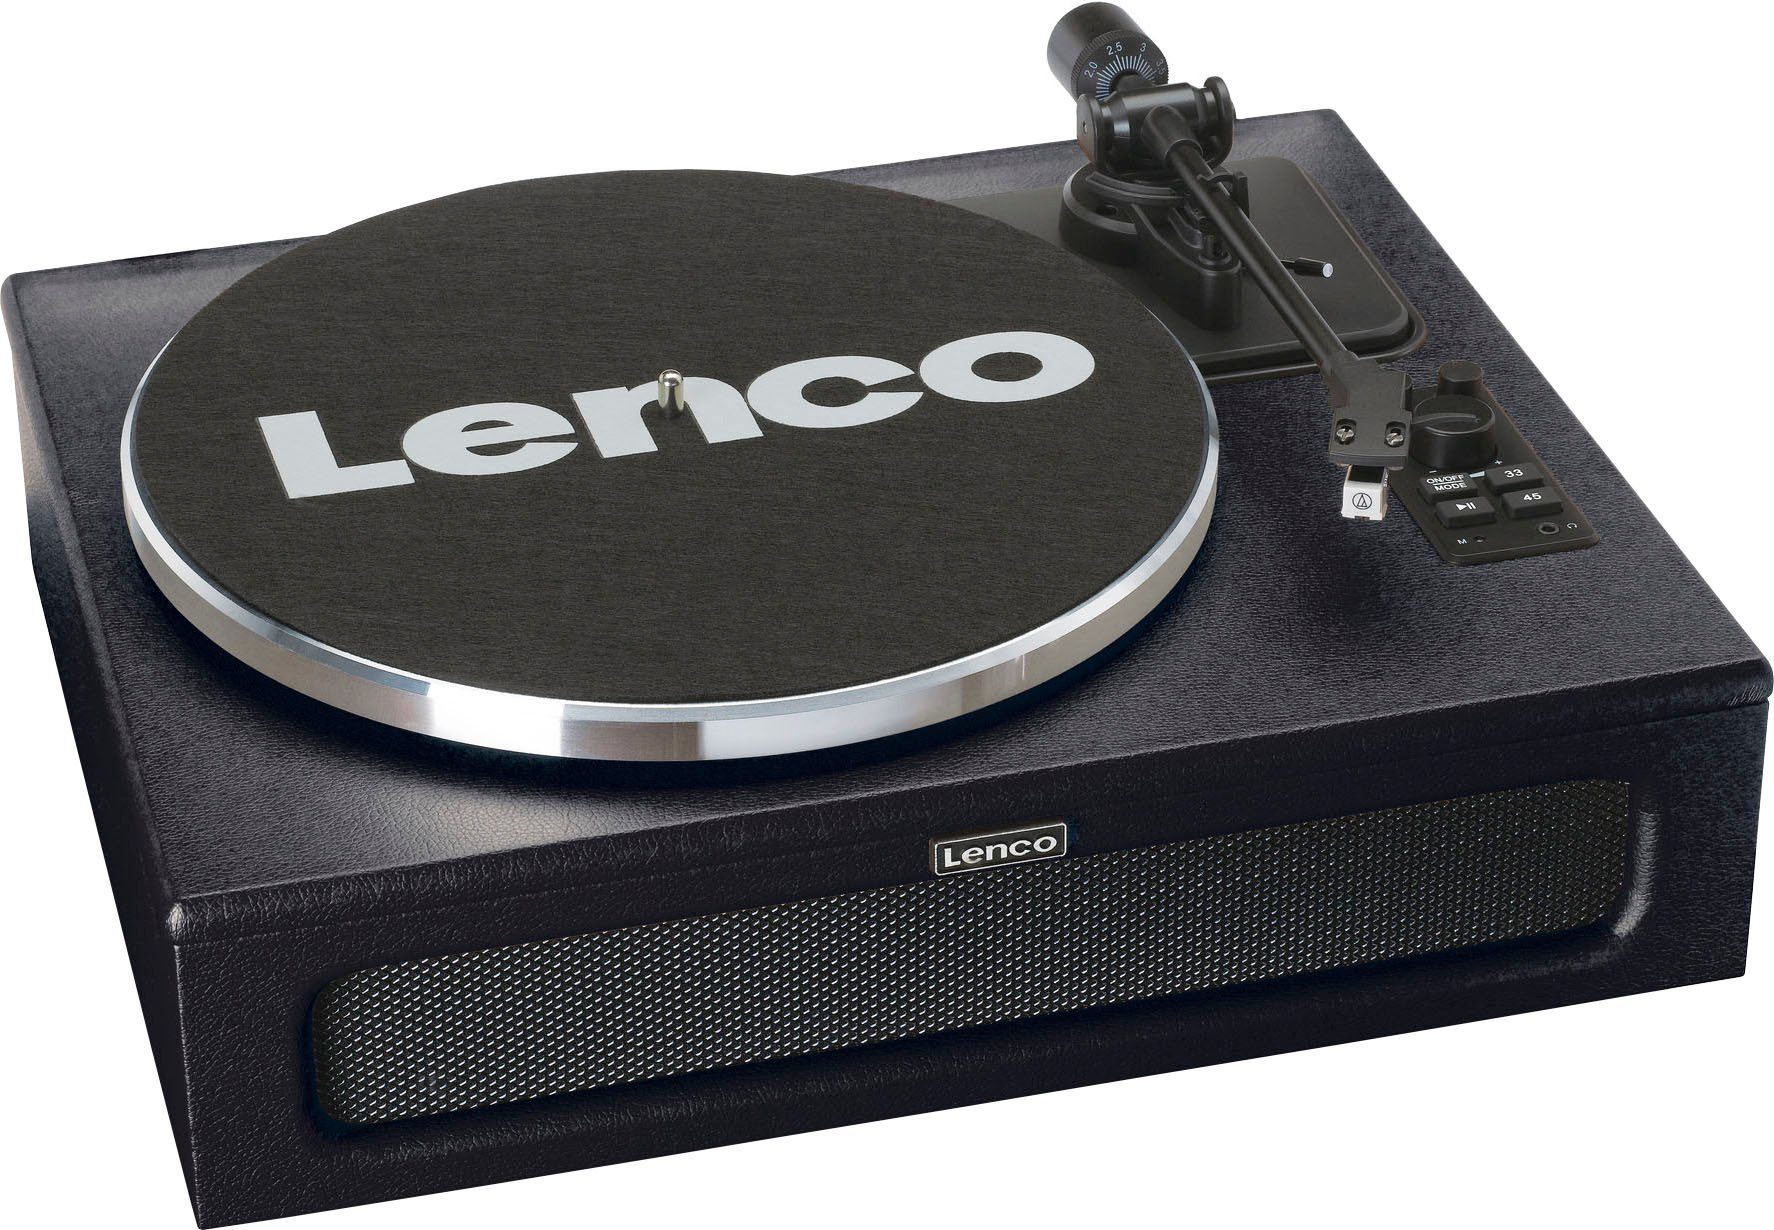 mit Lenco schwarz LS-430 Plattenspieler (Riemenantrieb) Lautsprechern Plattenspieler 4